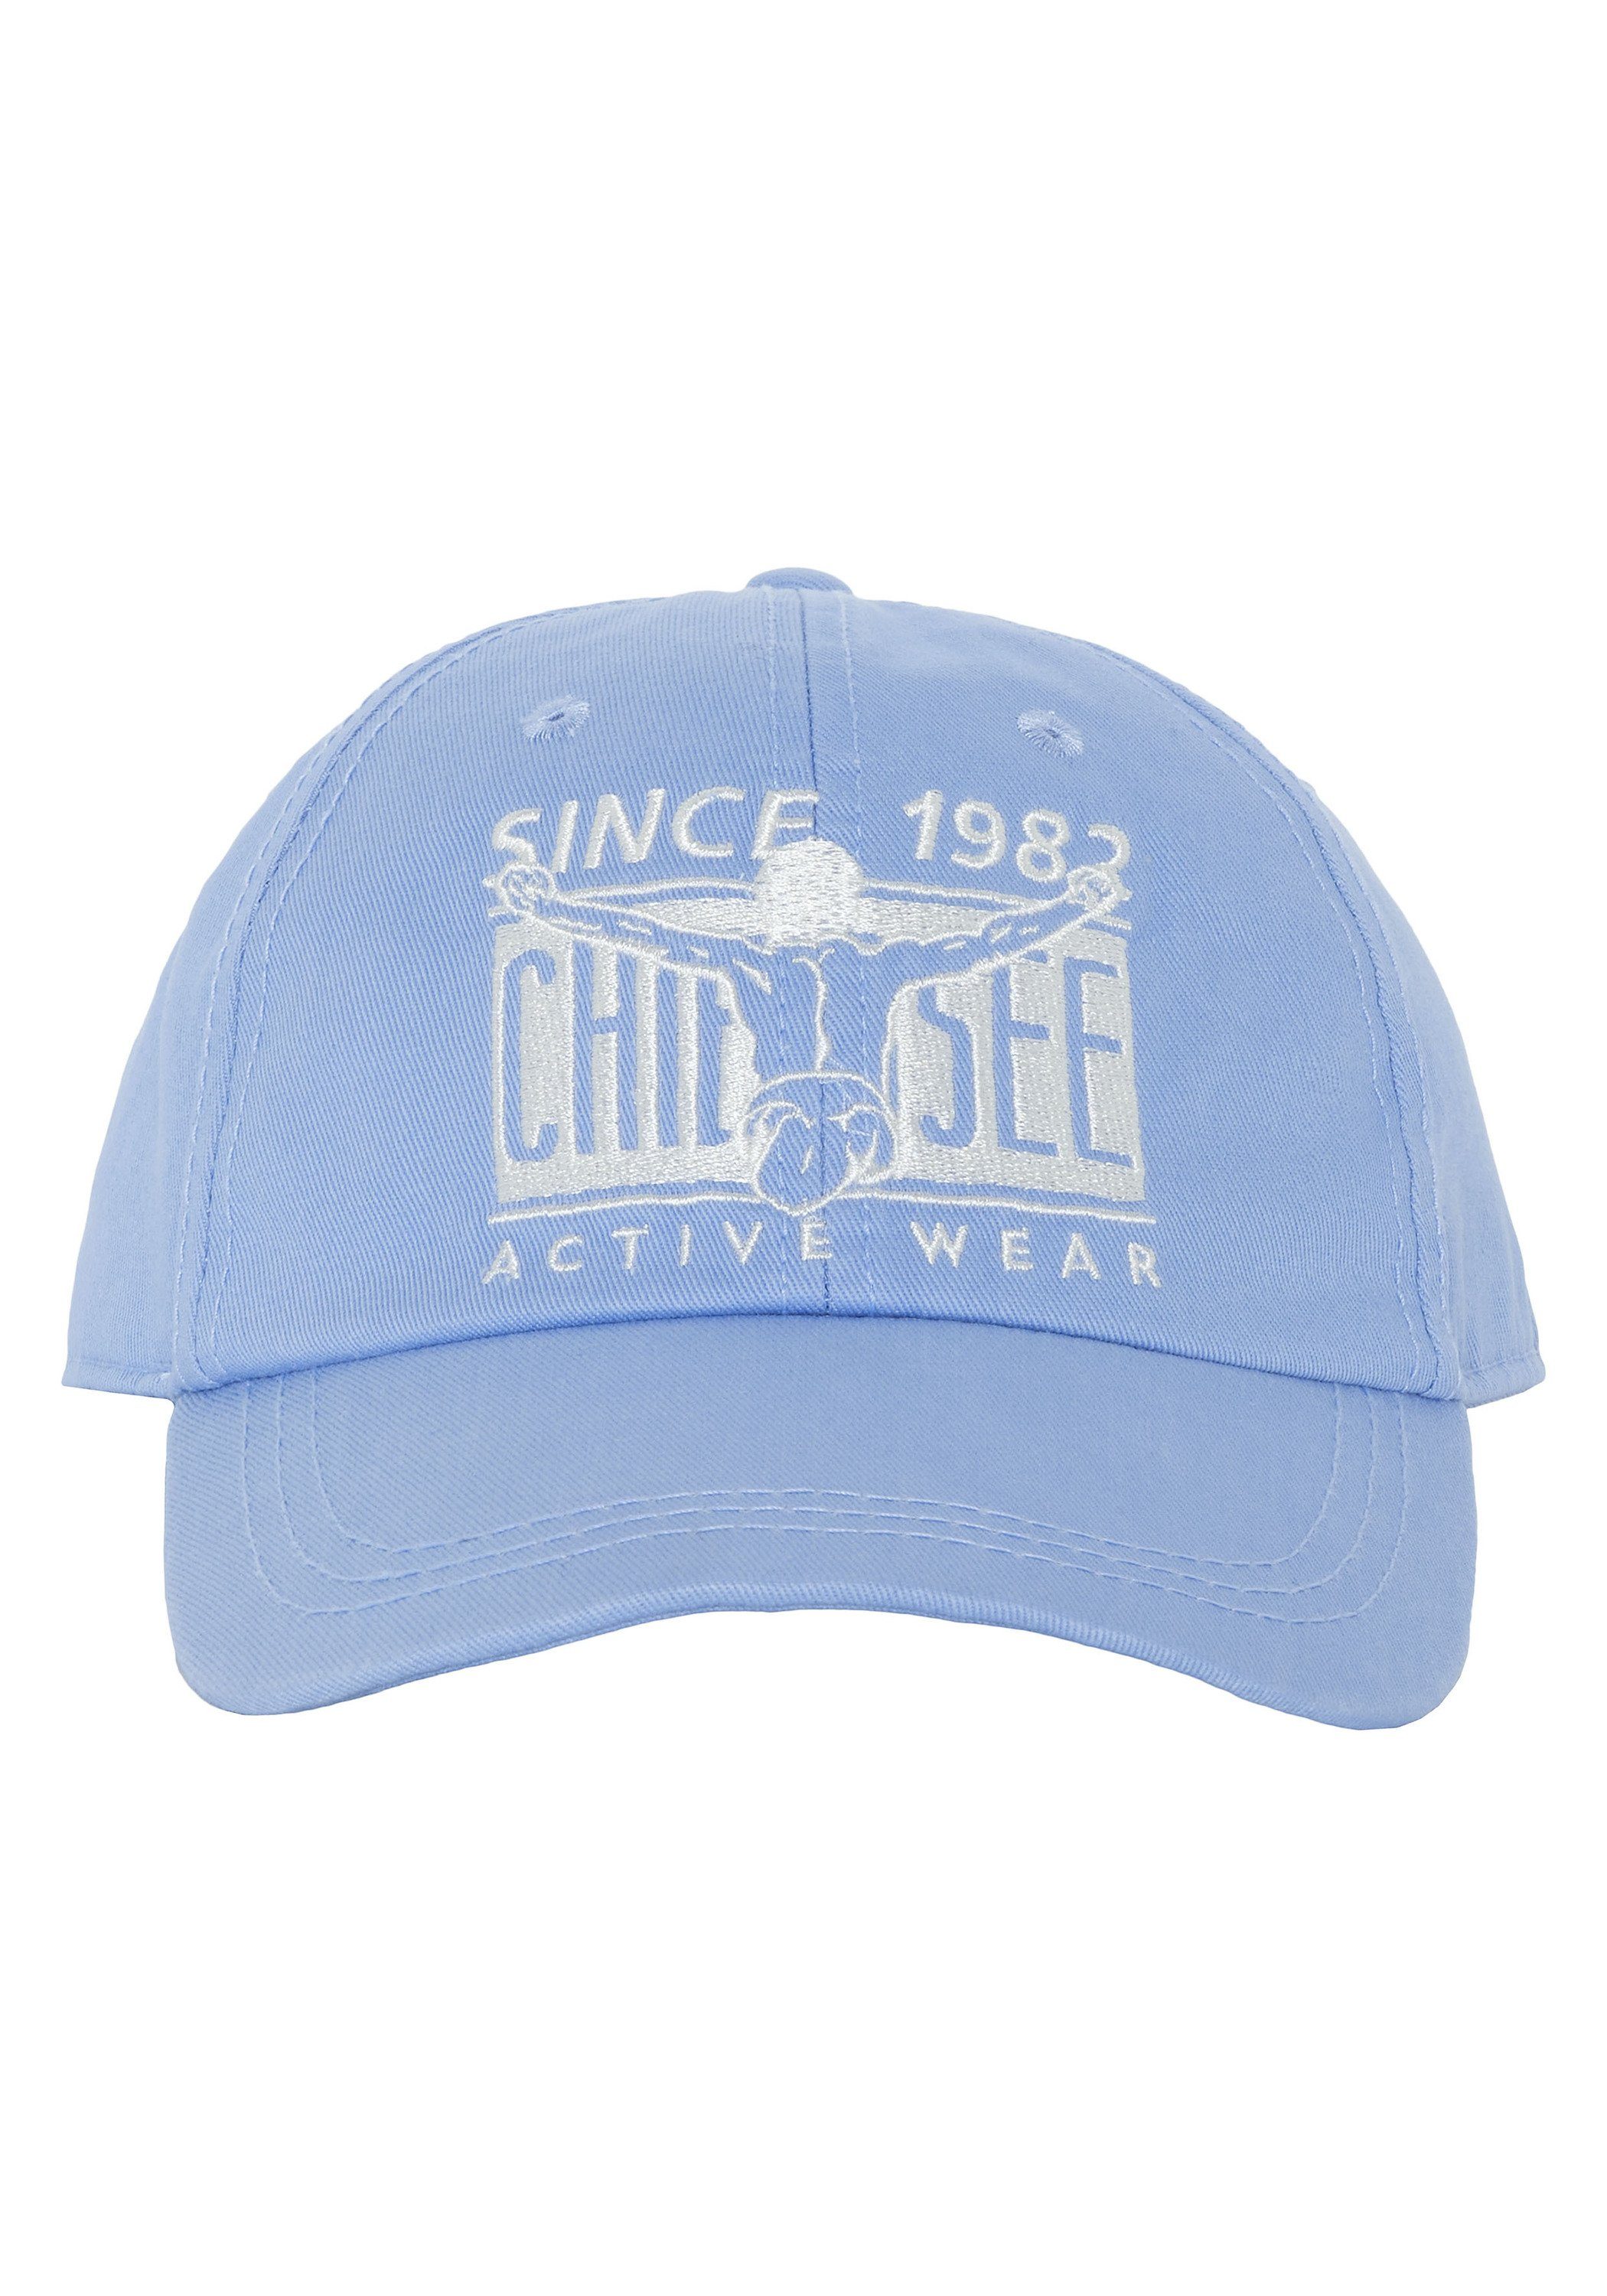 Cap Blue Chiemsee Bel Snapback aus Label-Design 1 15-3932 Air Baumwolle Unisex im Cap